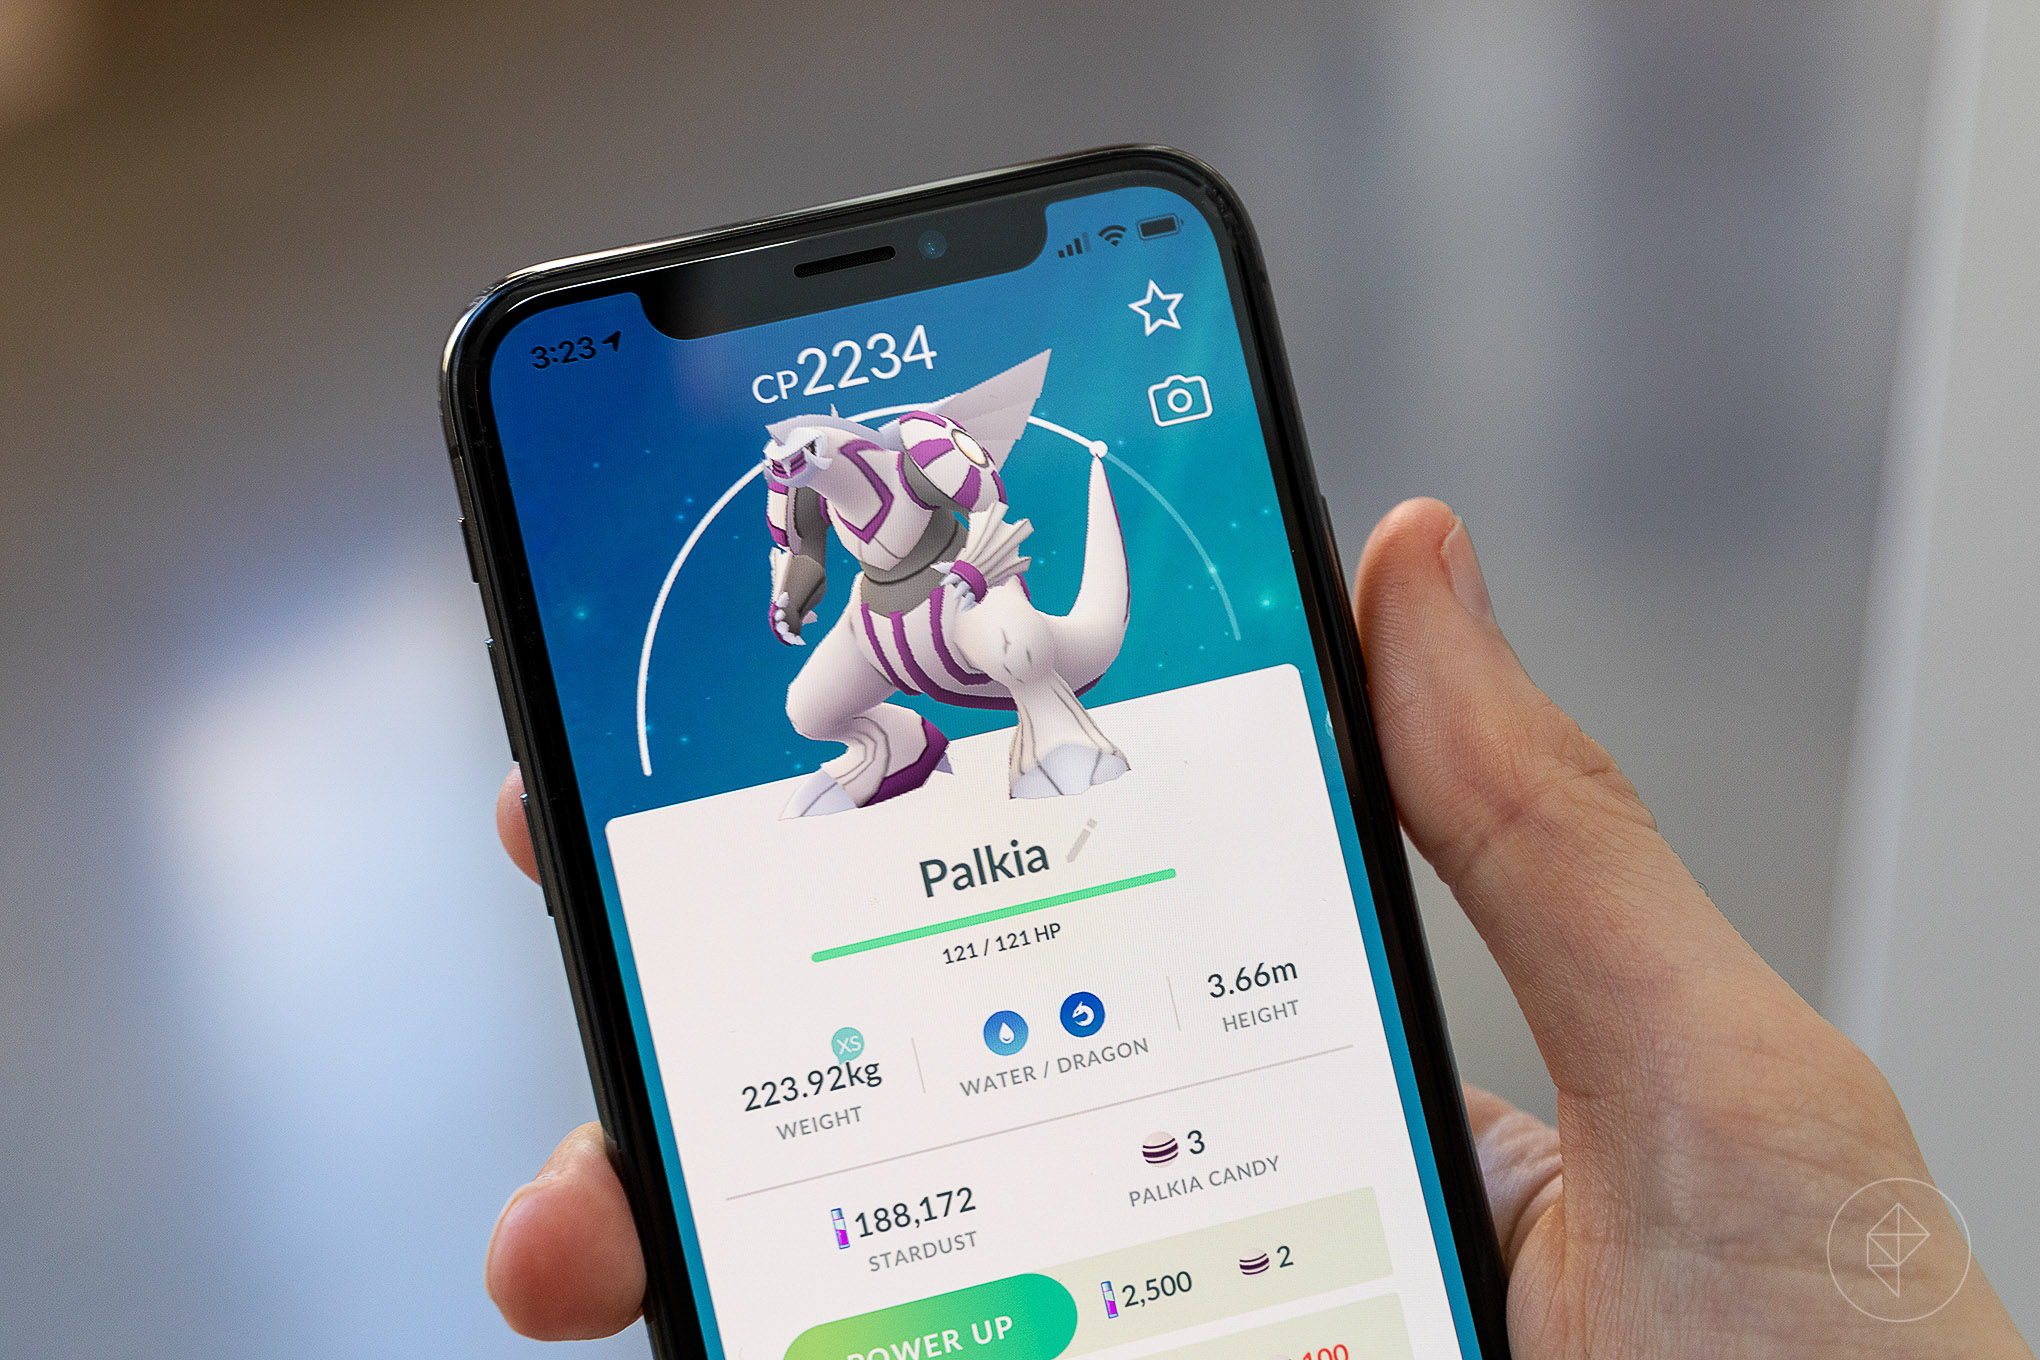 A photo of Palkia from Pokémon Go on an iPhone